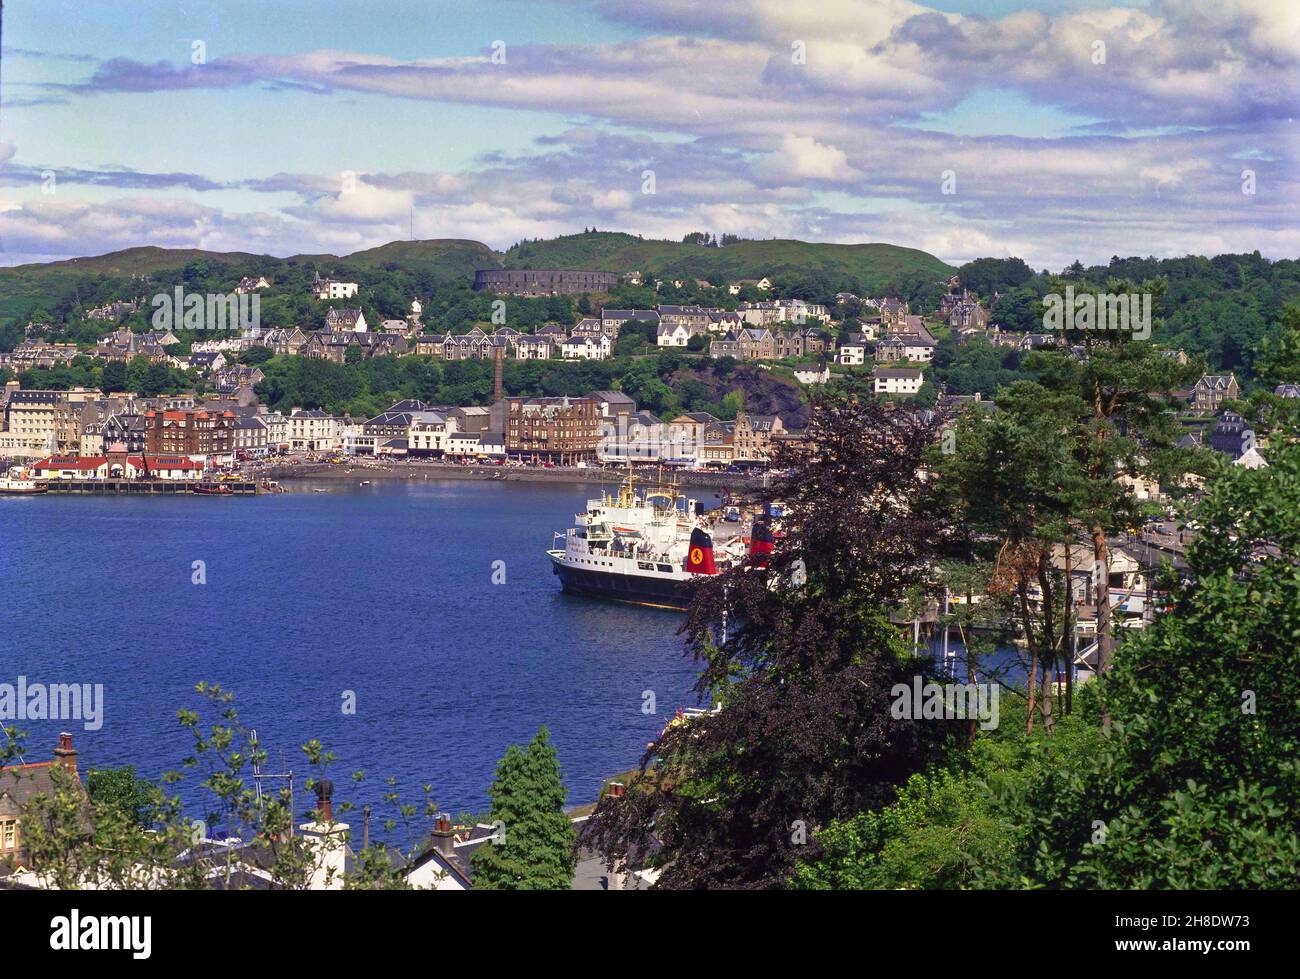 Vista de verano de Oban con el MV Claymore en vista 1980s Foto de stock